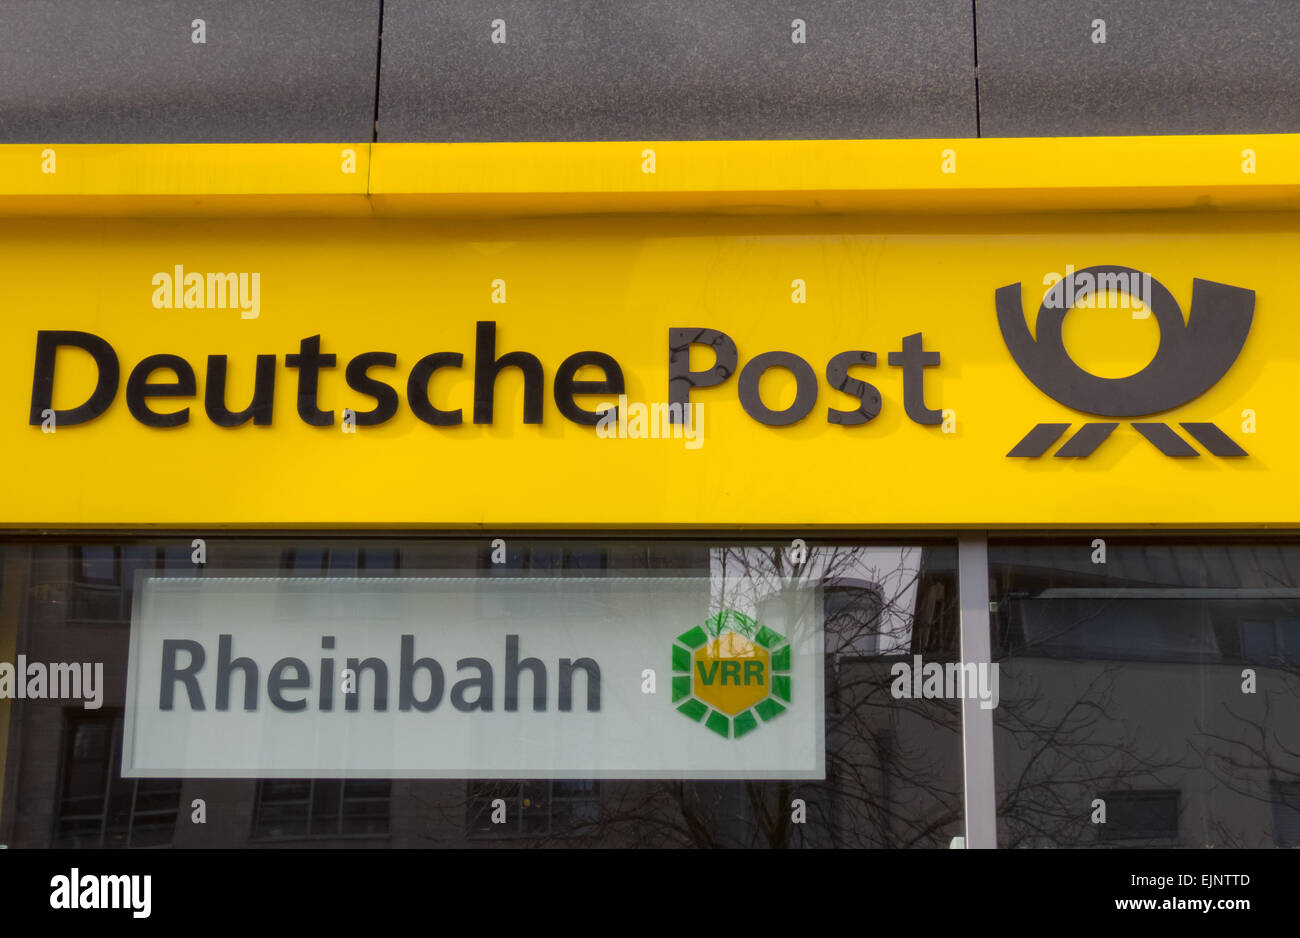 German Post Office, Deutsche Post Shop, Dusseldorf Germany Stock Photo